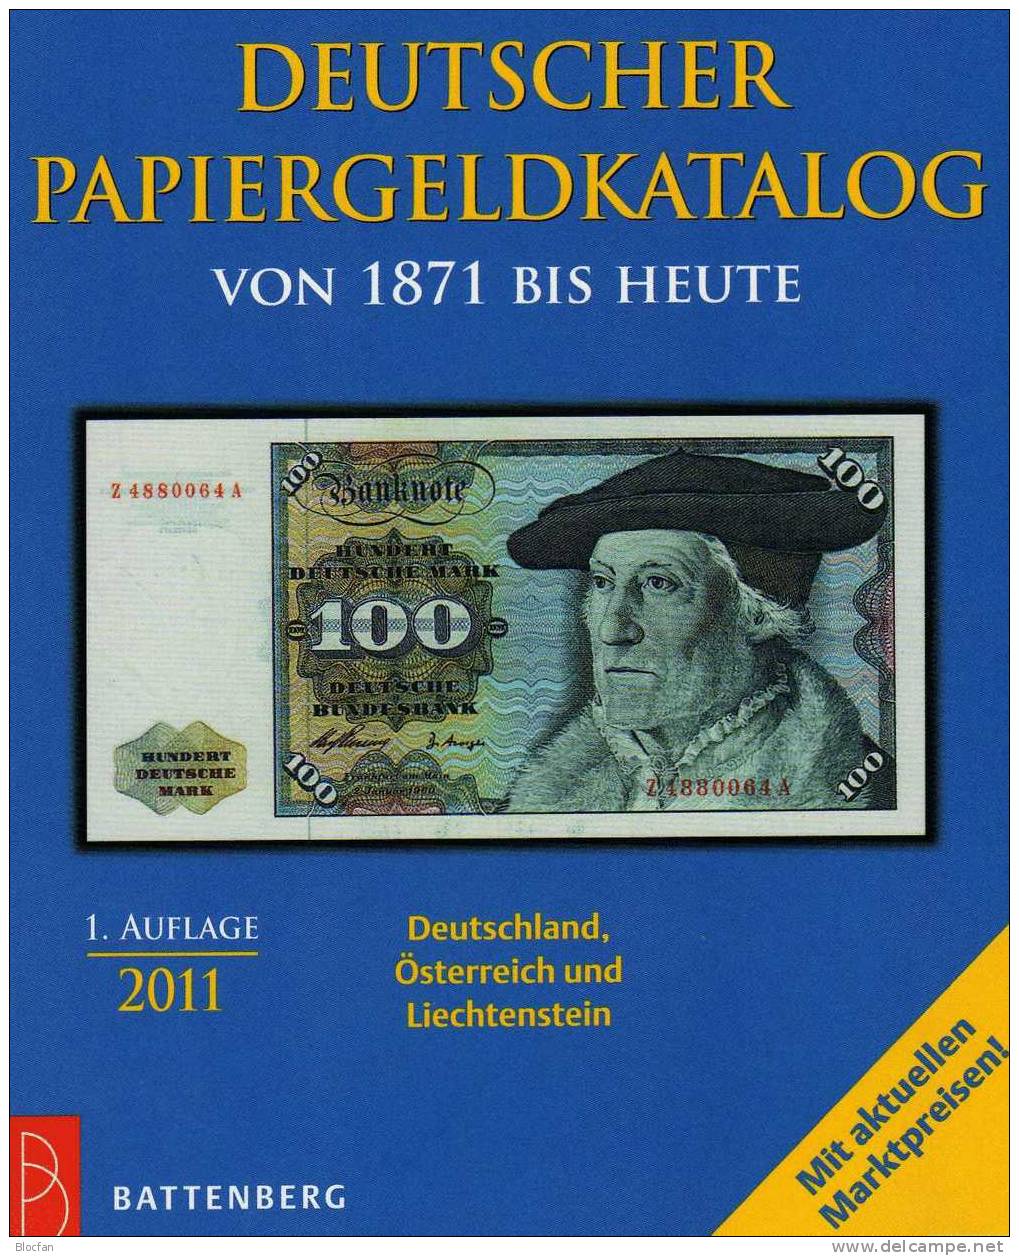 Banknoten Katalog Deutschland 2011 New 12€ Für Papiergeld Neue Auflage EURO-Banknoten Grabowski Battenberg Of Catalogue - Collections